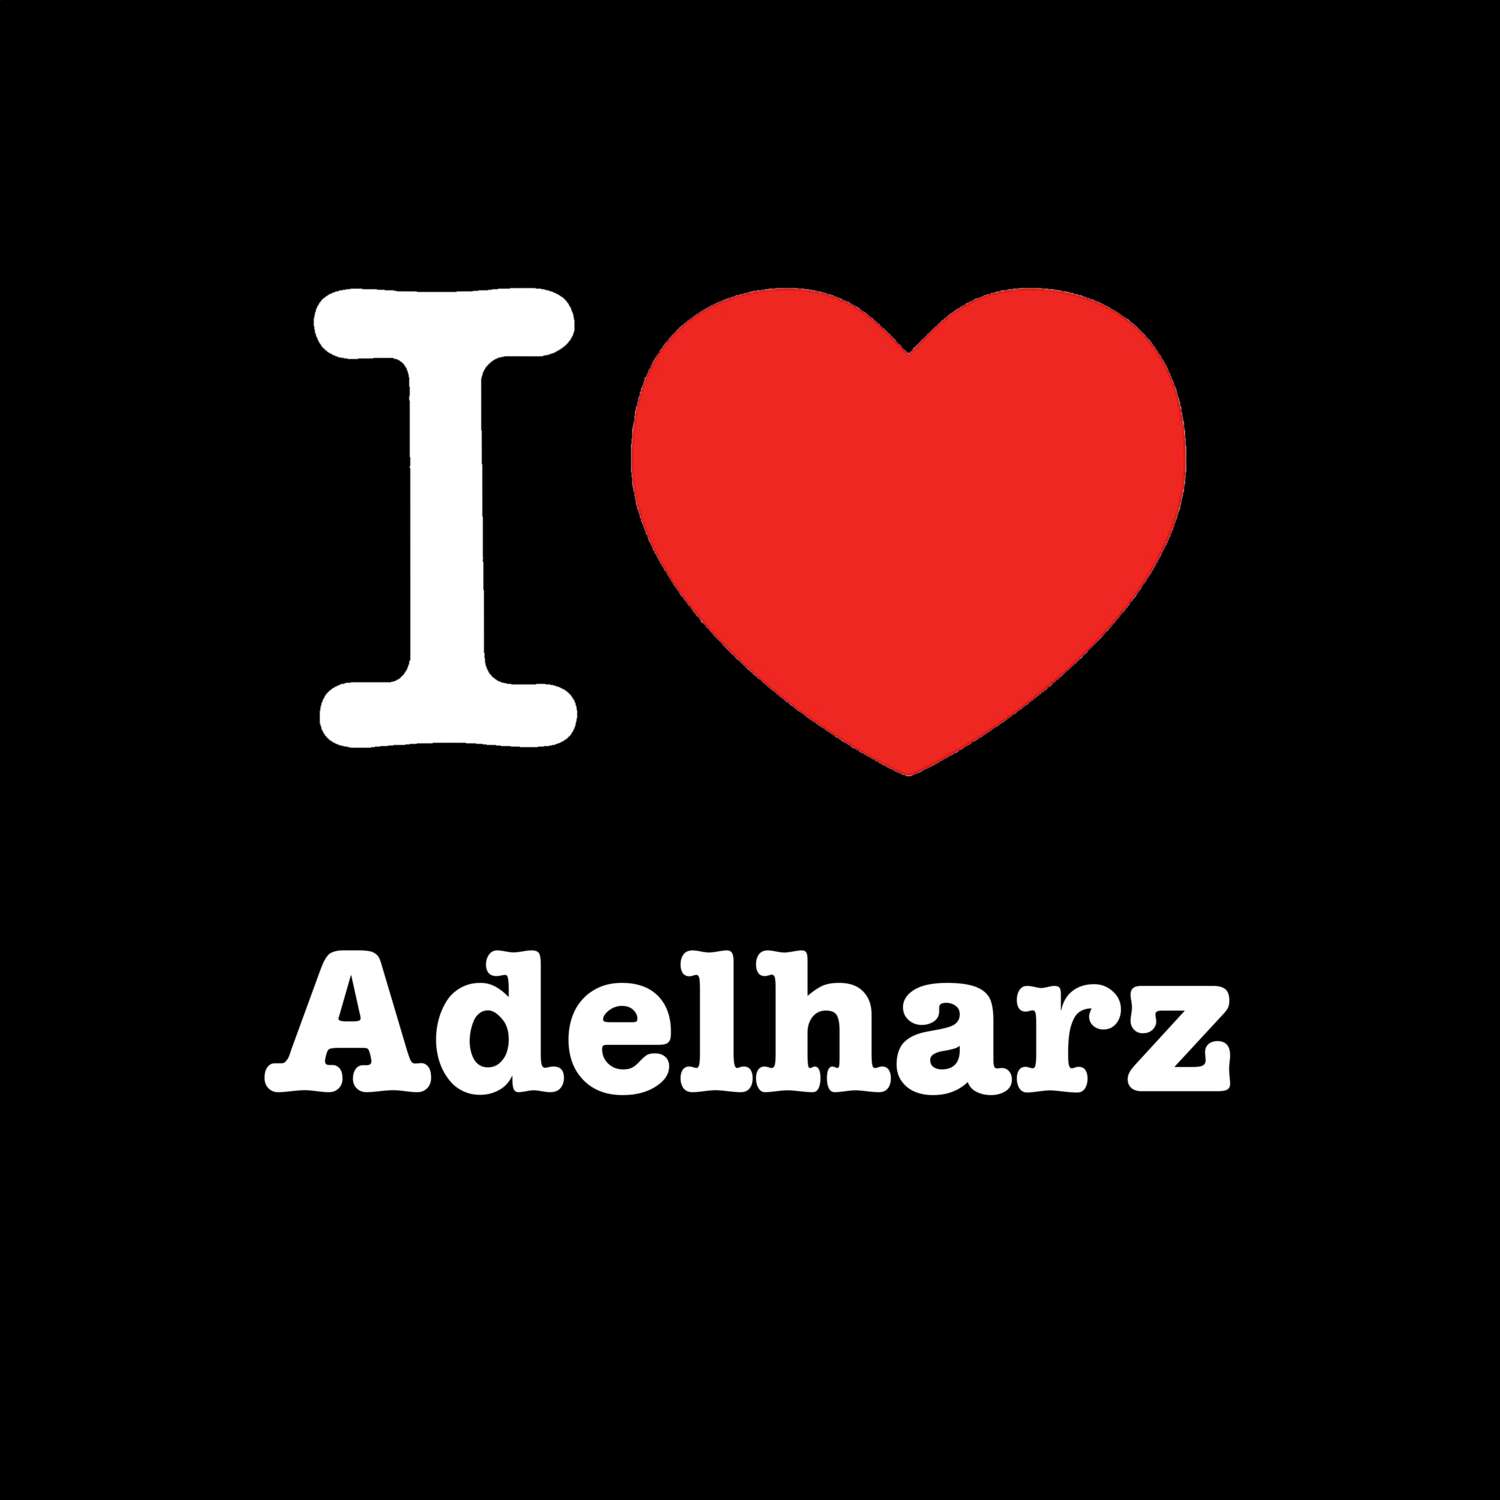 Adelharz T-Shirt »I love«